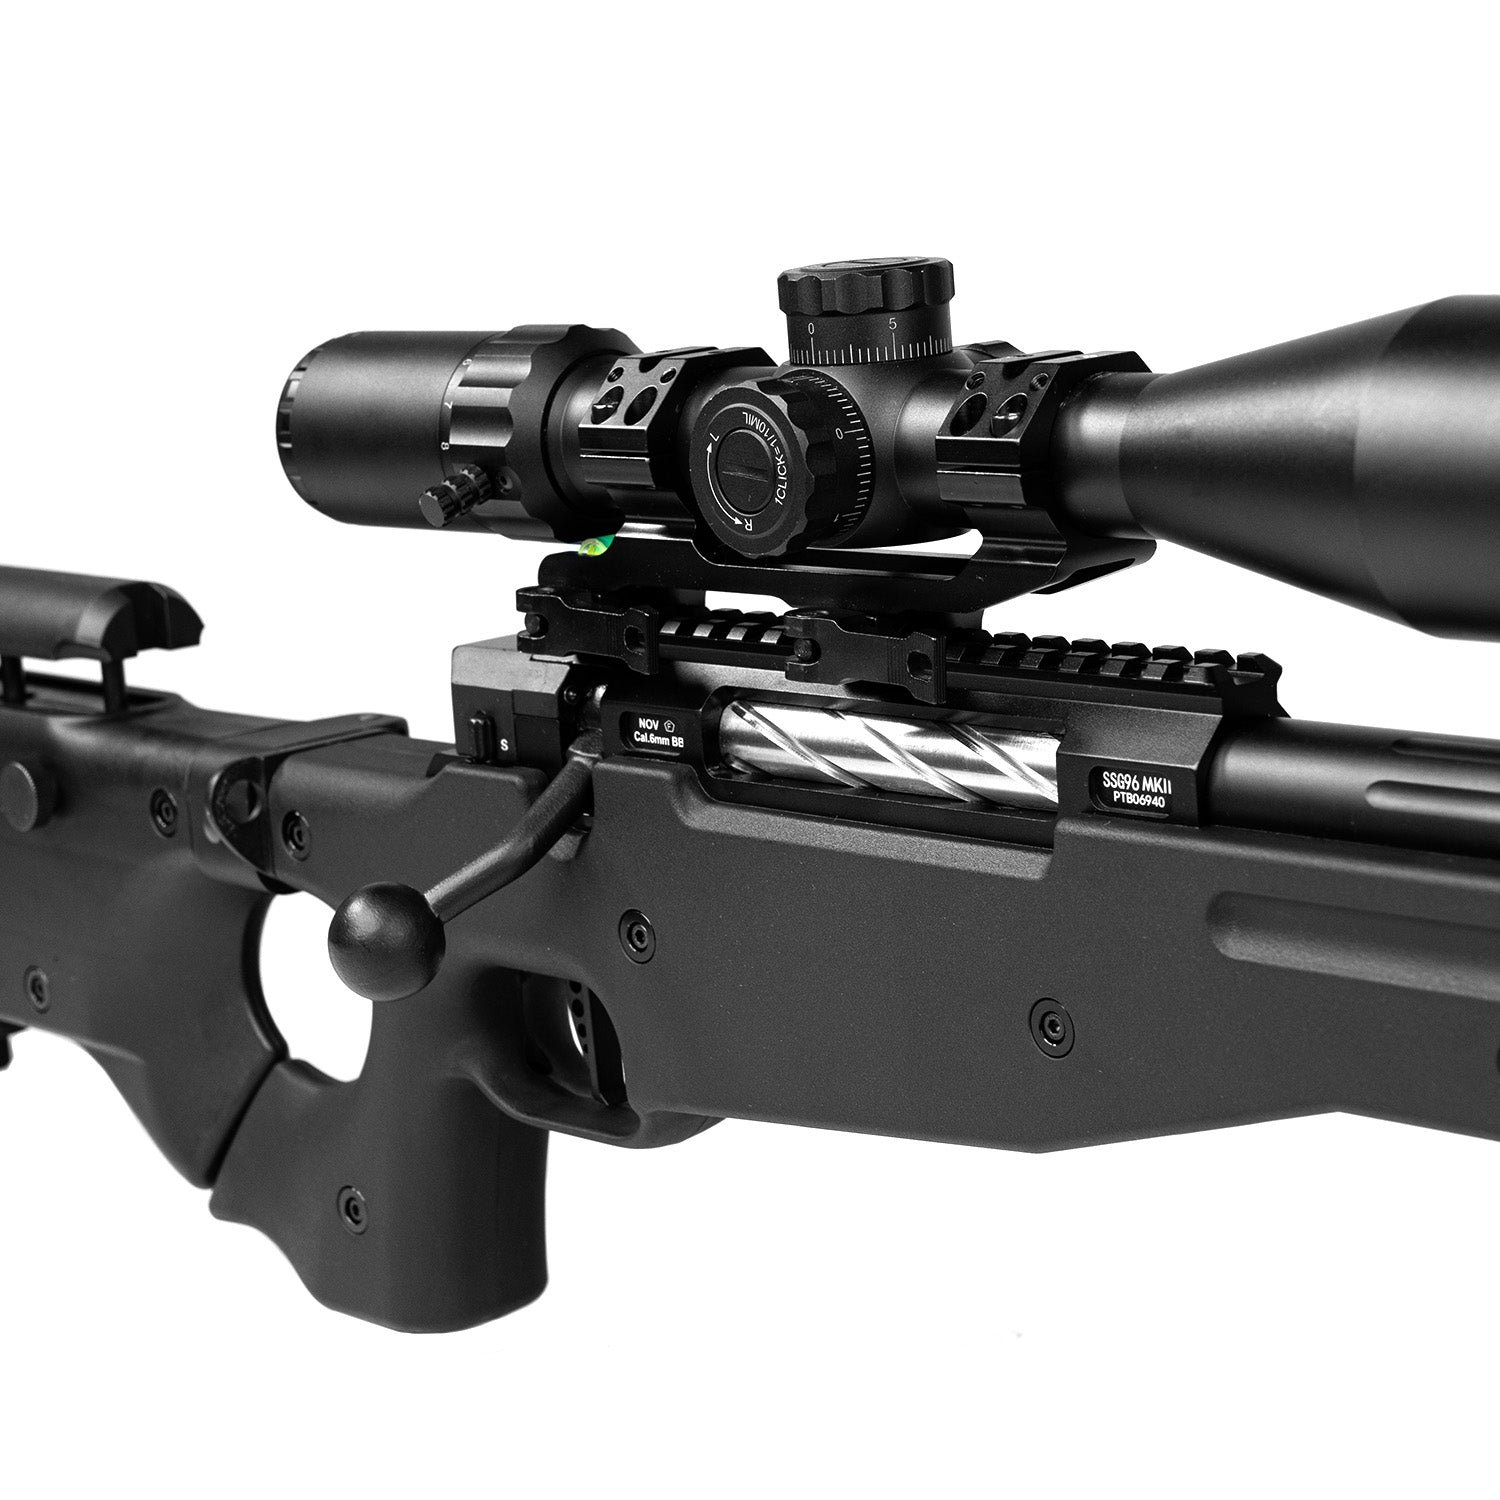 Novritsch SSG96 Mk2 – Airsoft Sniper Rifle